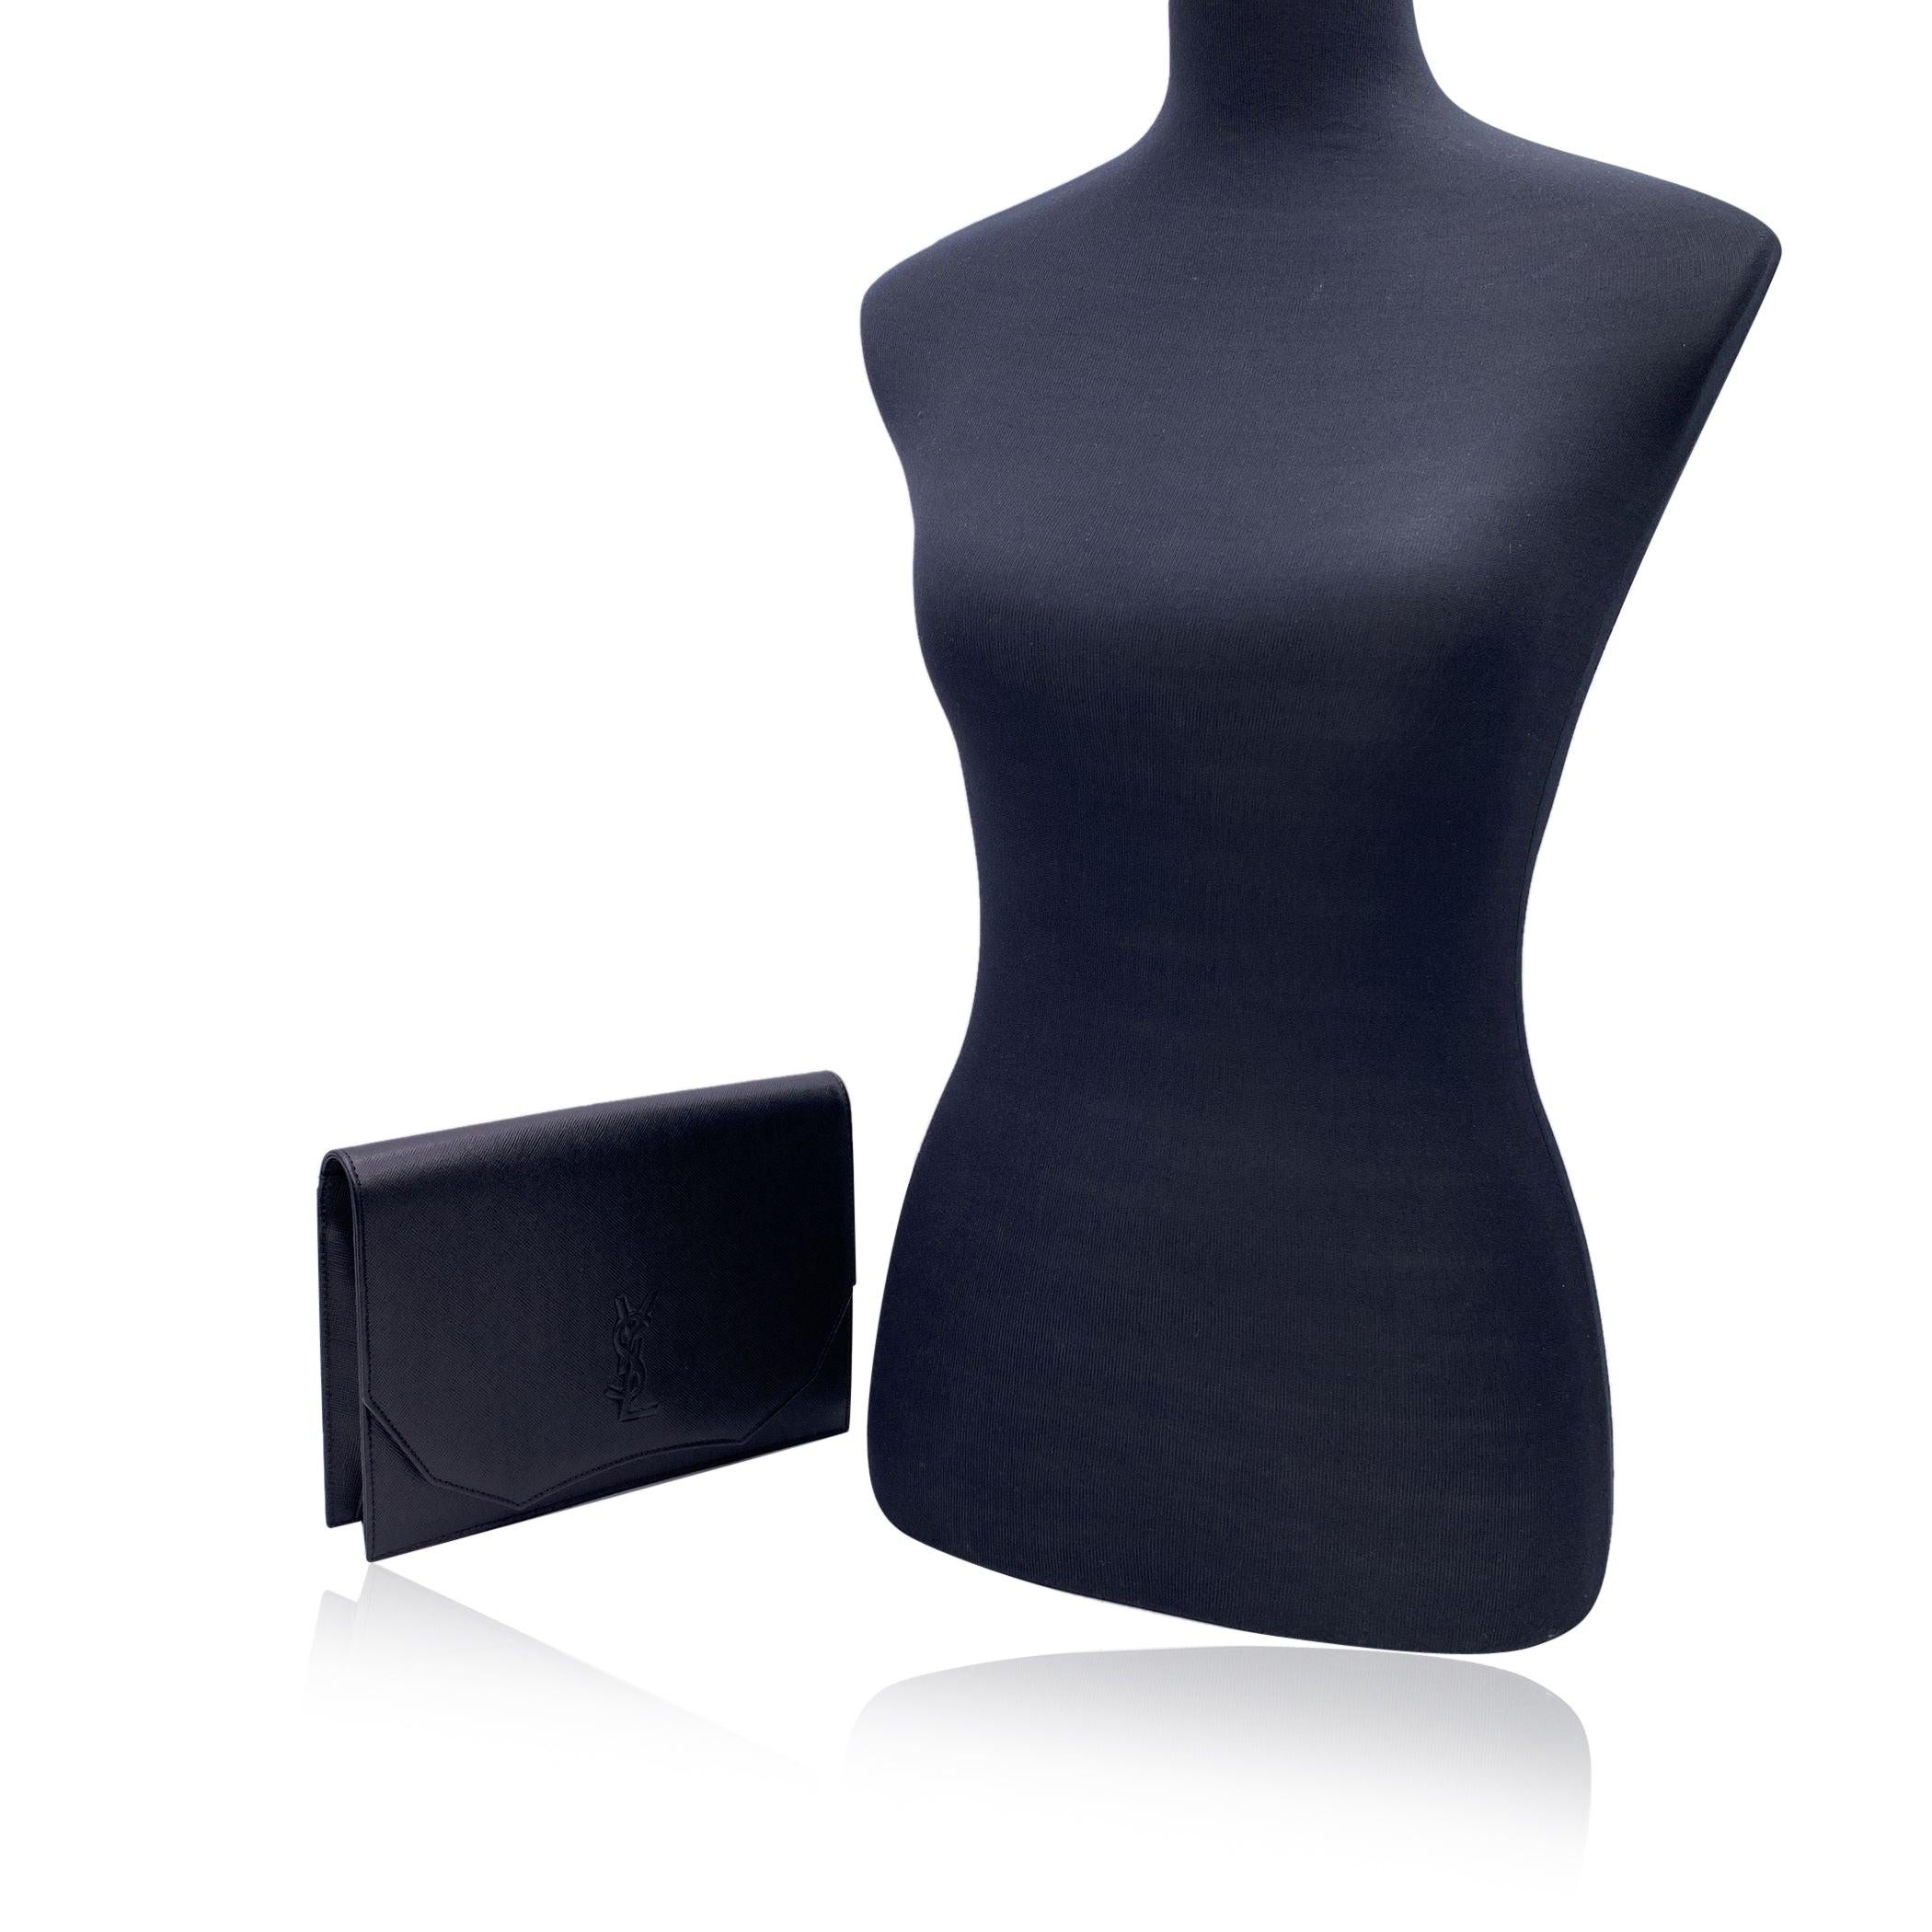 Yves Saint Laurent Vintage Clutch Bag aus schwarzem Leder. Sie hat eine Klappe mit Magnetknopfverschluss auf der Vorderseite. YSL-Logo auf der Vorderseite. 1 offene Tasche hinten. Beigefarbenes Stofffutter. 1 Seitentasche mit Reißverschluss innen.